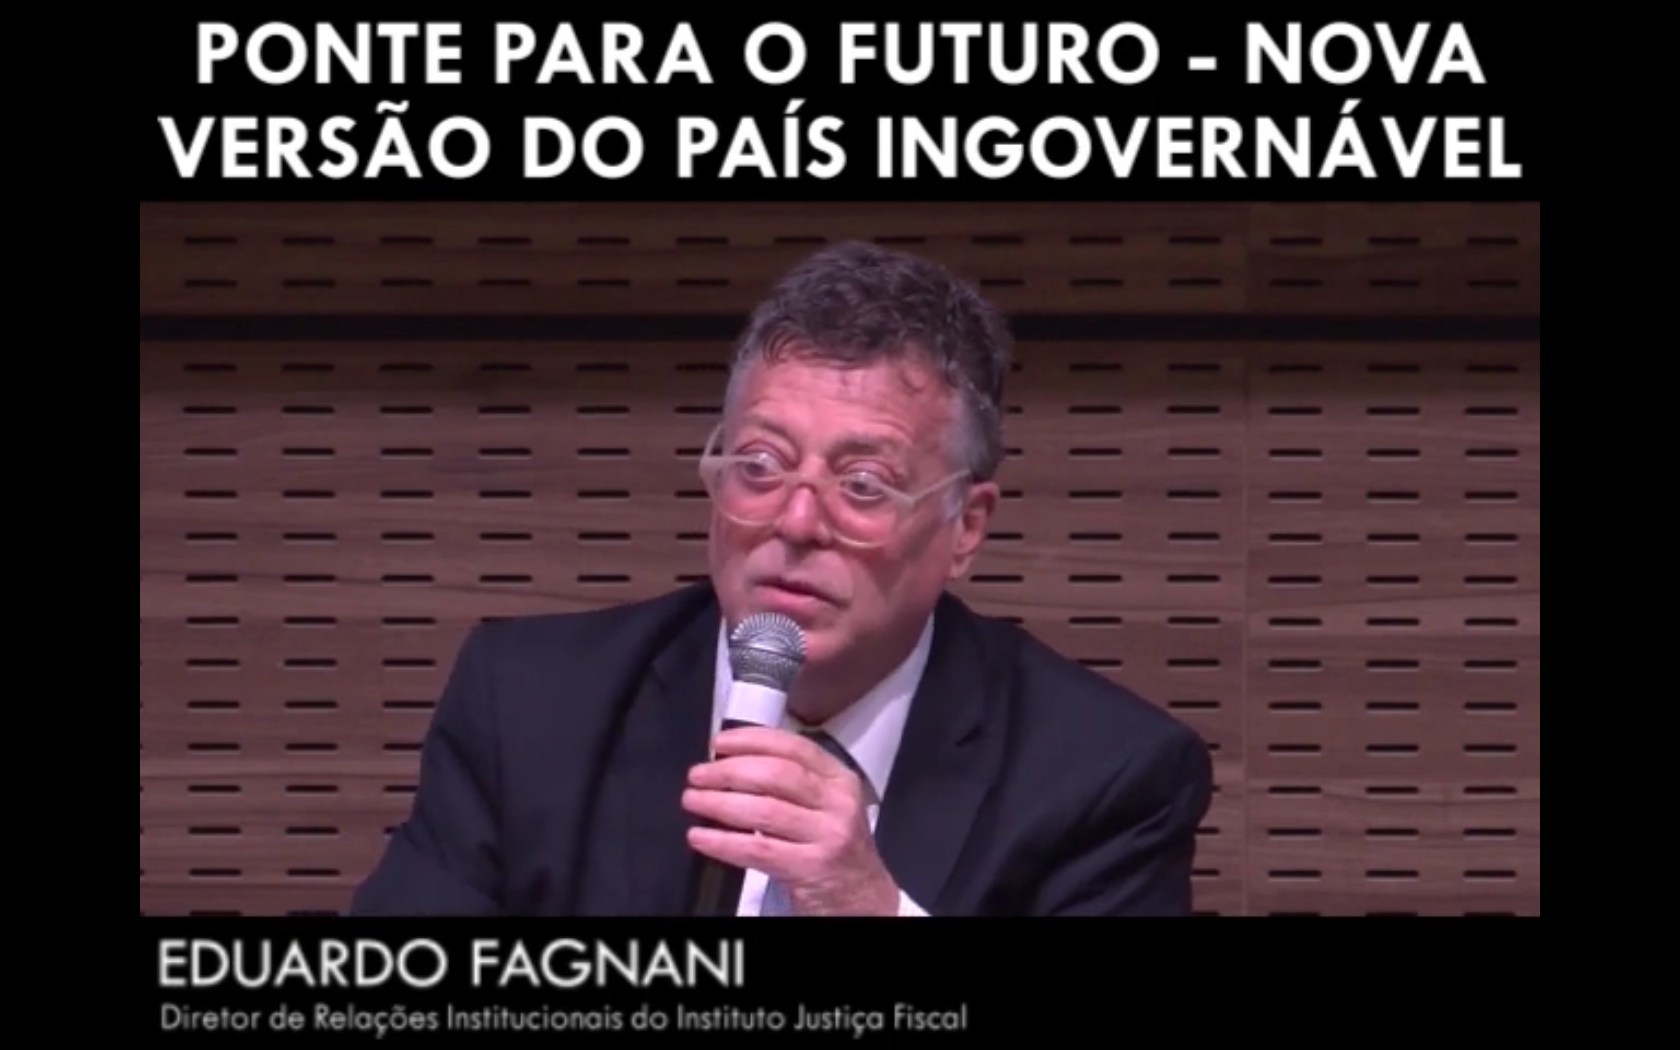 Ponte para o futuro - Nova versão do país ingovernável - Eduardo Fagnani